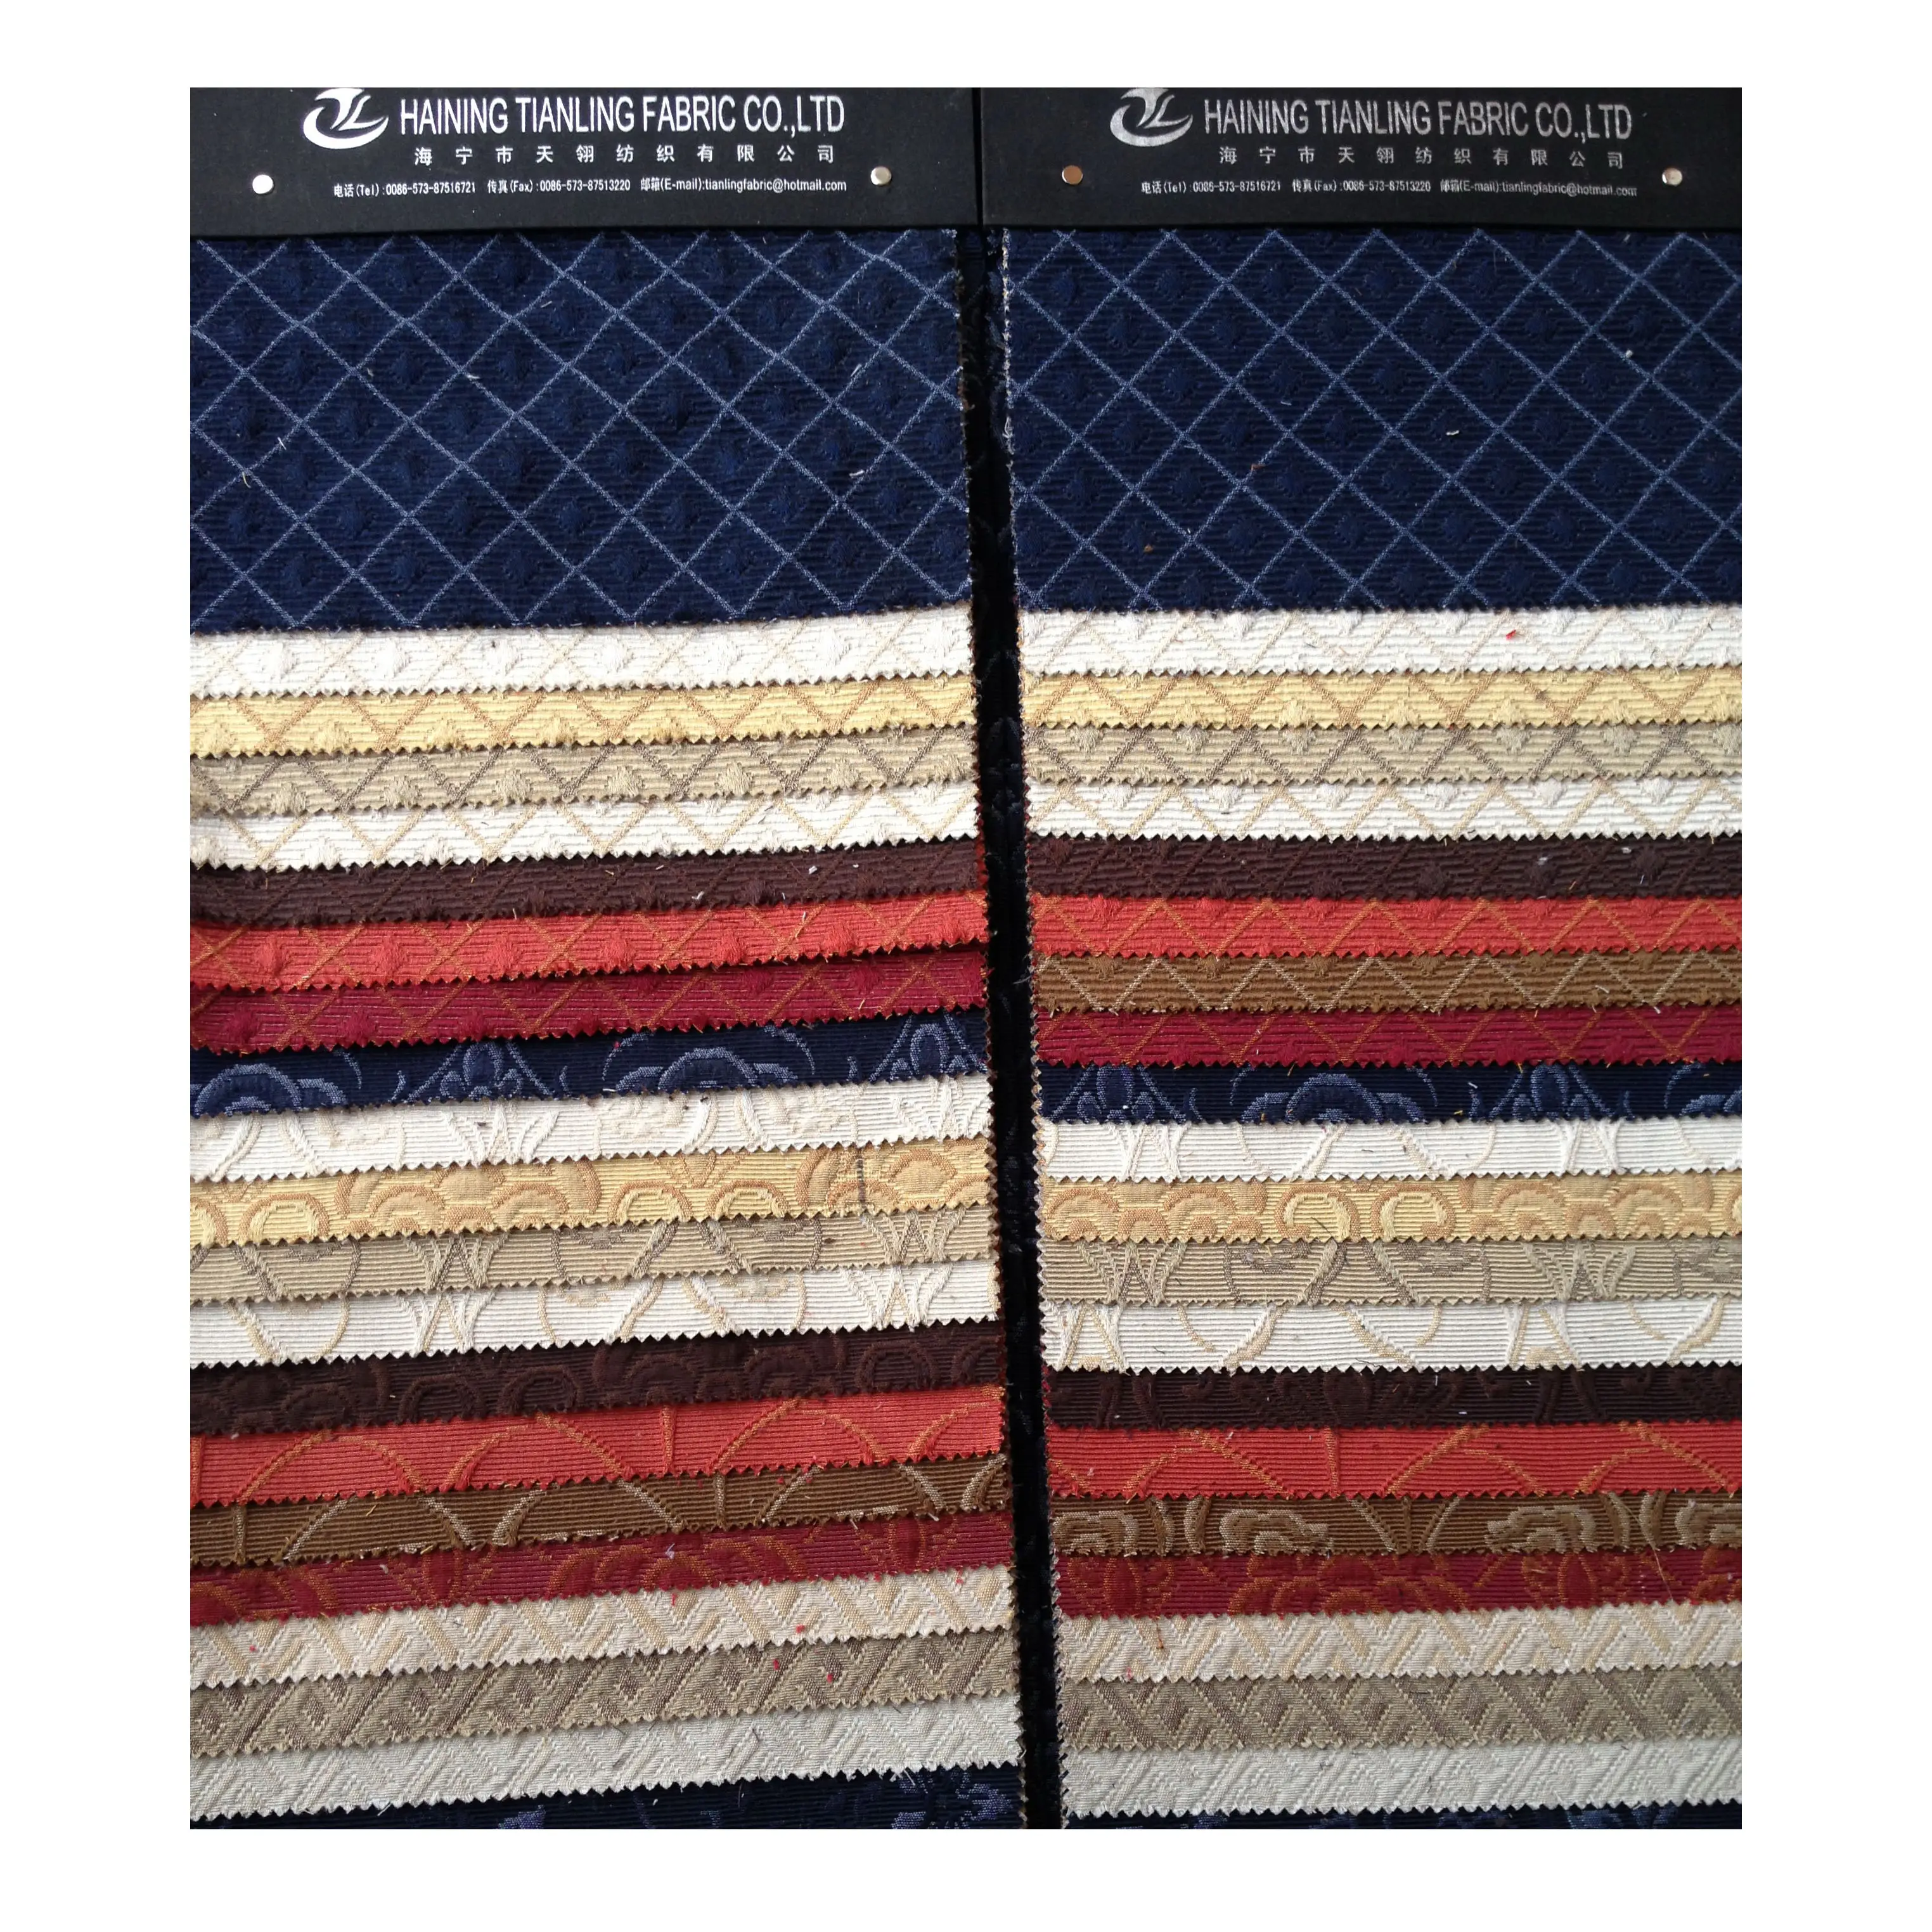 Niedriger Preis Stock lot Baumwolle Polyester gebürstet Stoff Garn gefärbt Flanell Stoff für Vorhang